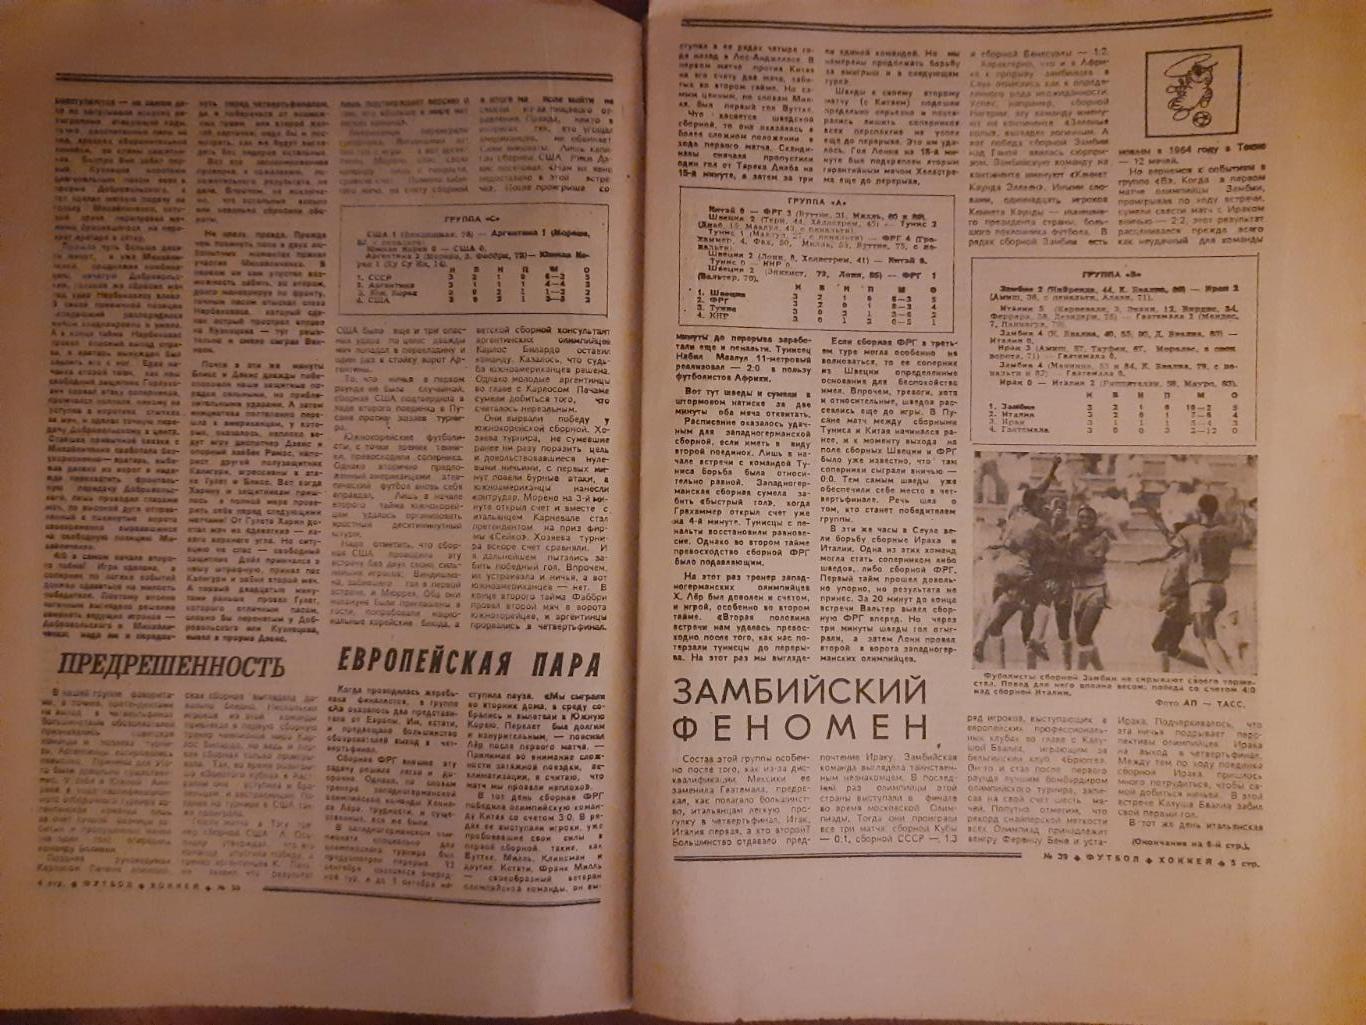 еженедельник футбол-хоккей #39,1988 1